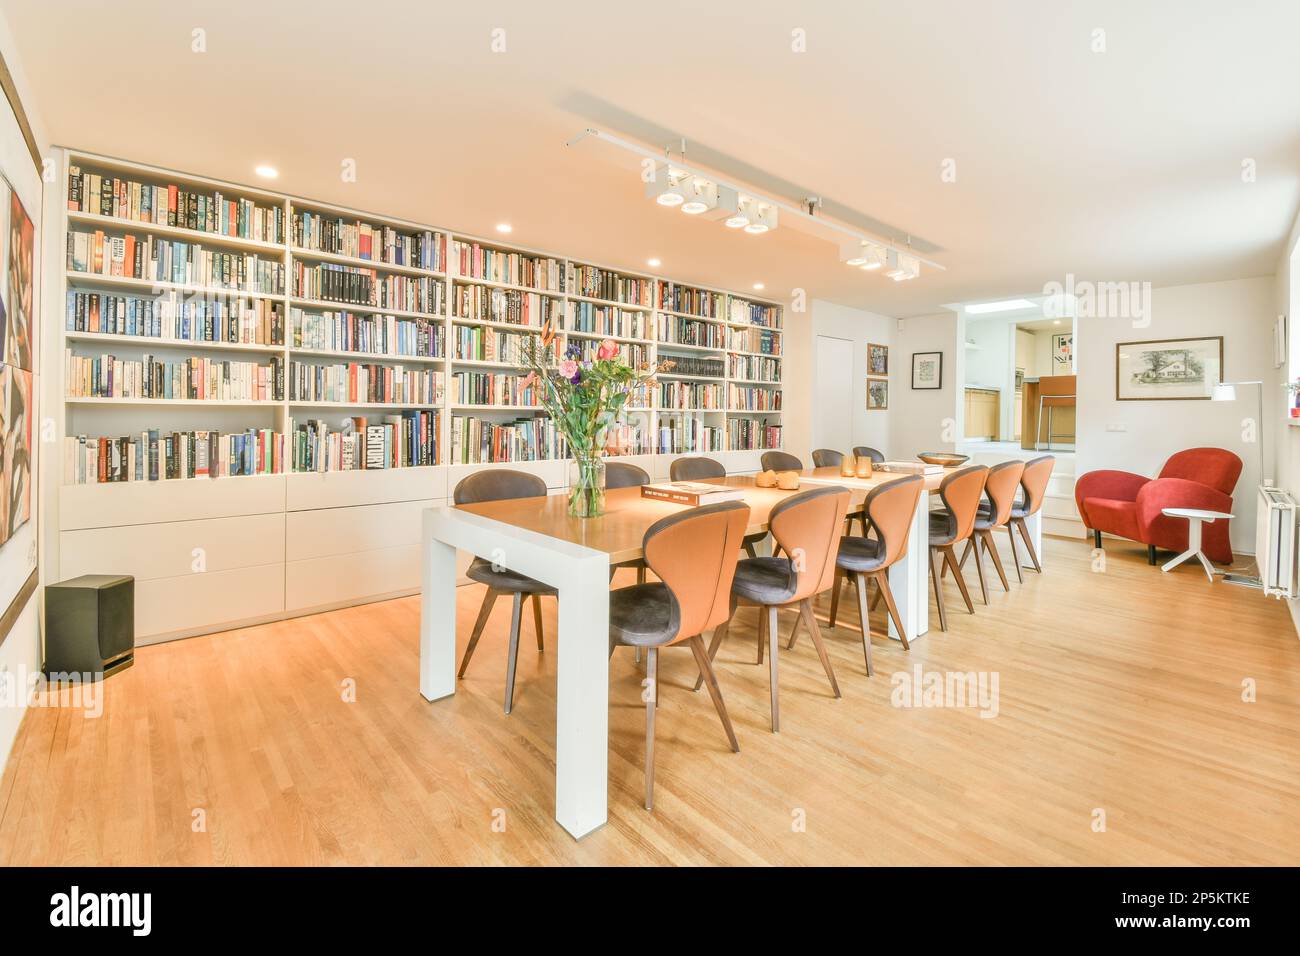 un salon avec de nombreux livres sur les étagères et des chaises devant les bibliothèques qui sont pleines de livres Banque D'Images